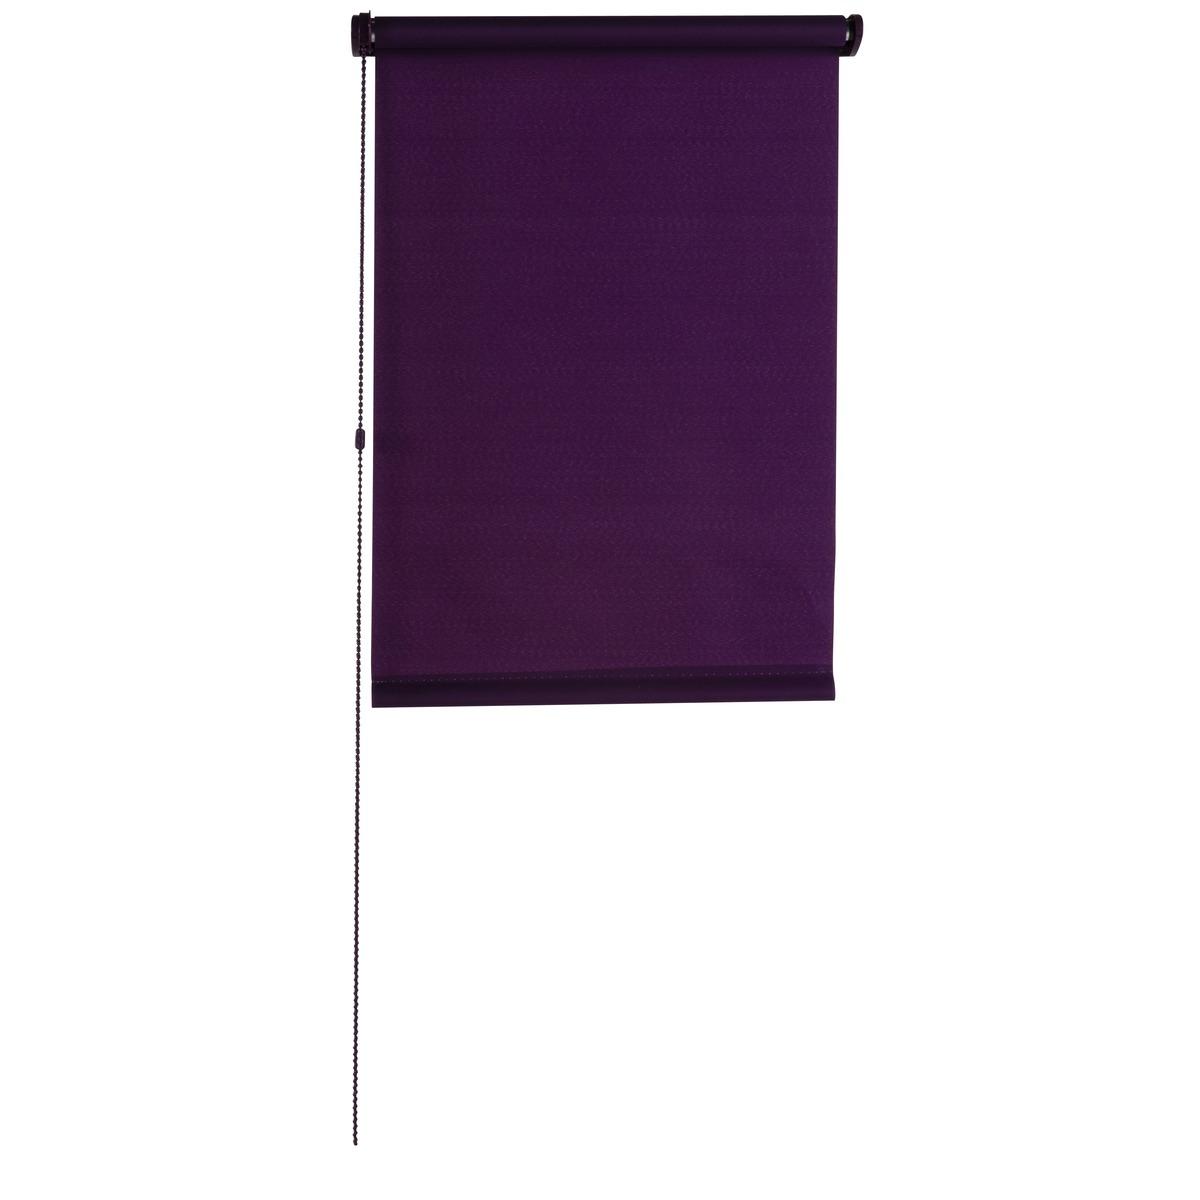 Store enrouleur tamisant - 60 x 180 cm - Violet